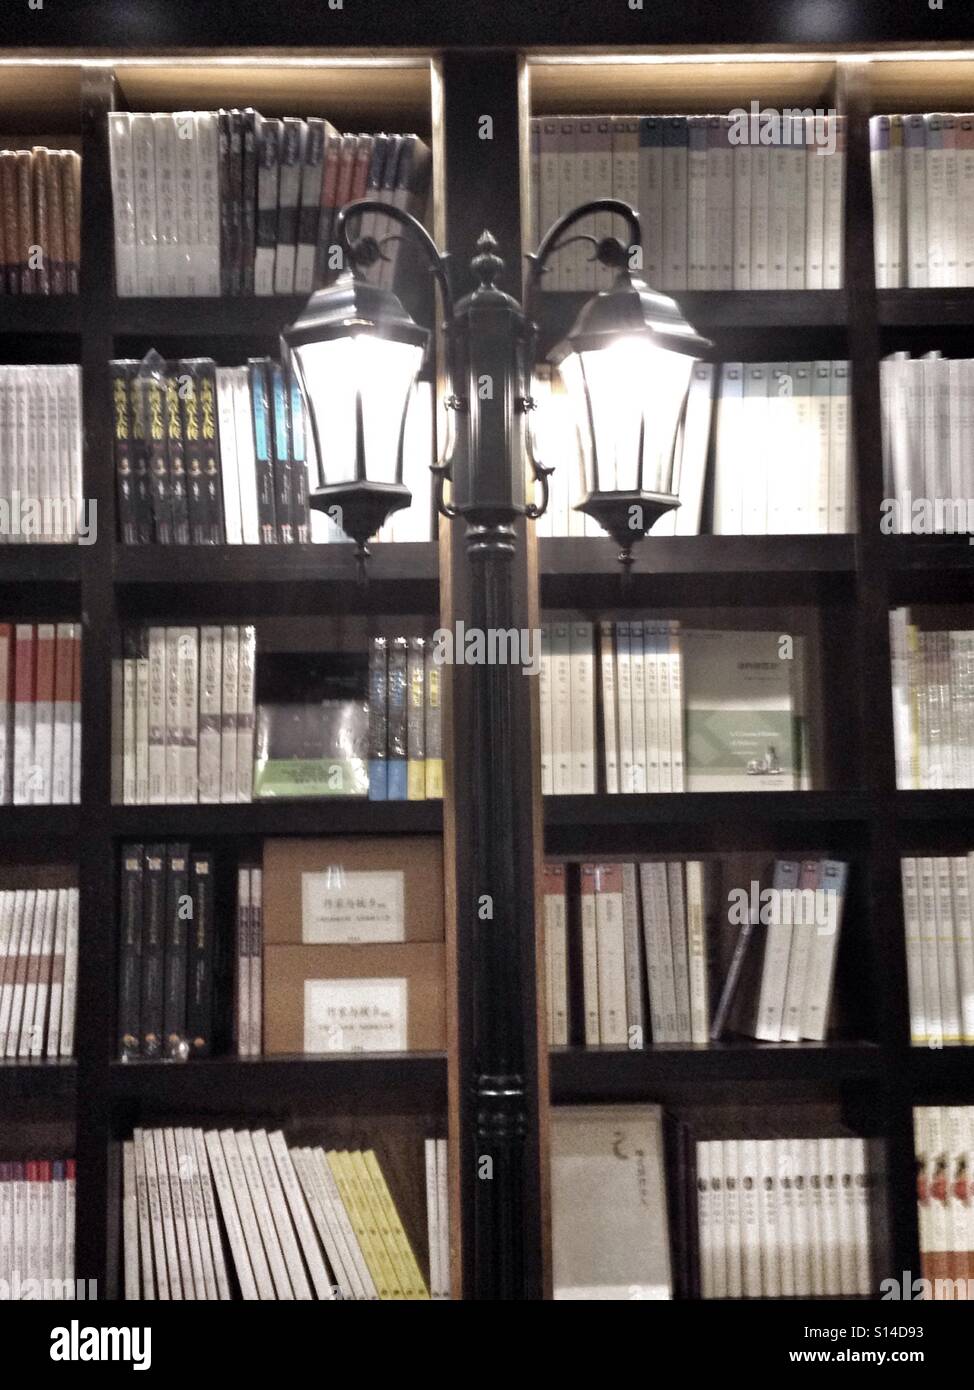 Via lampada illumina una libreria, come i libri di illuminare la mente Foto Stock